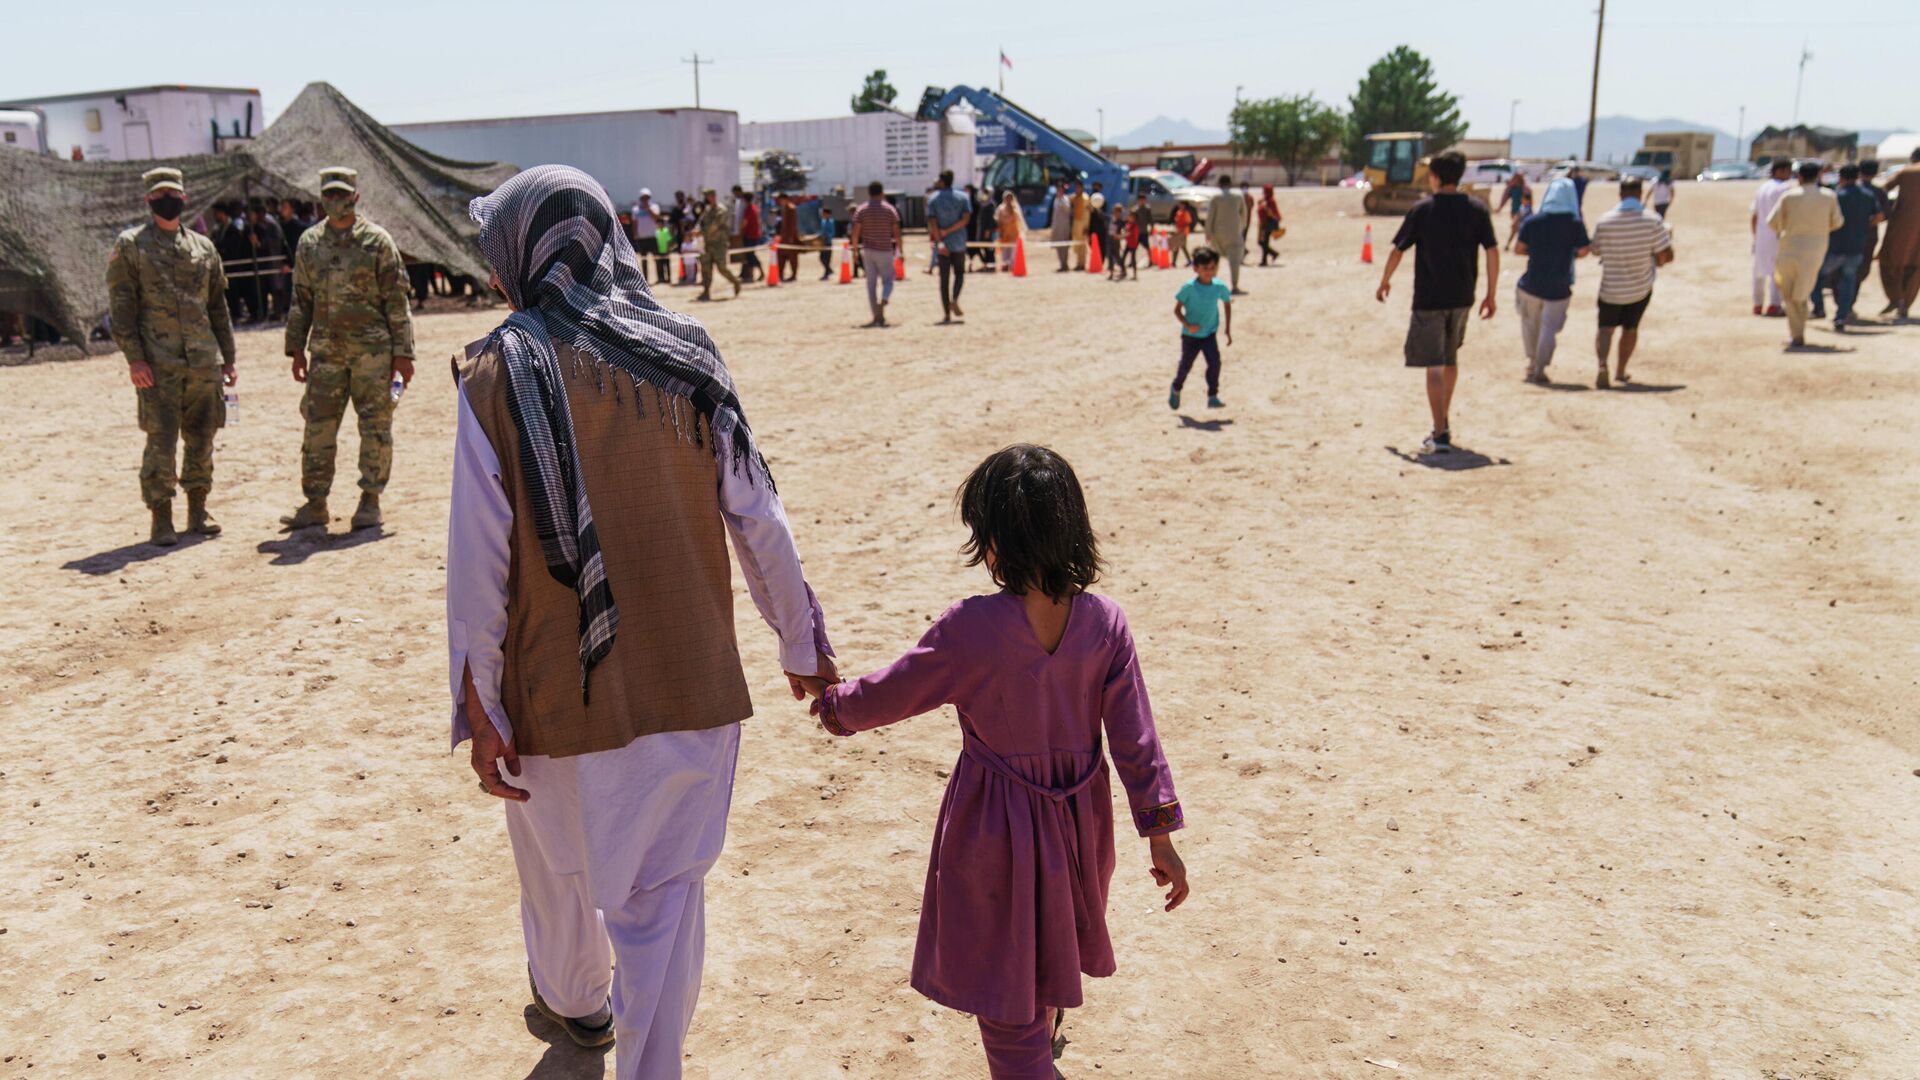 Афганский беженец гуляет с ребенком на территории военного комплекса Донья Ана в Нью-Мексико, США - РИА Новости, 1920, 25.09.2021